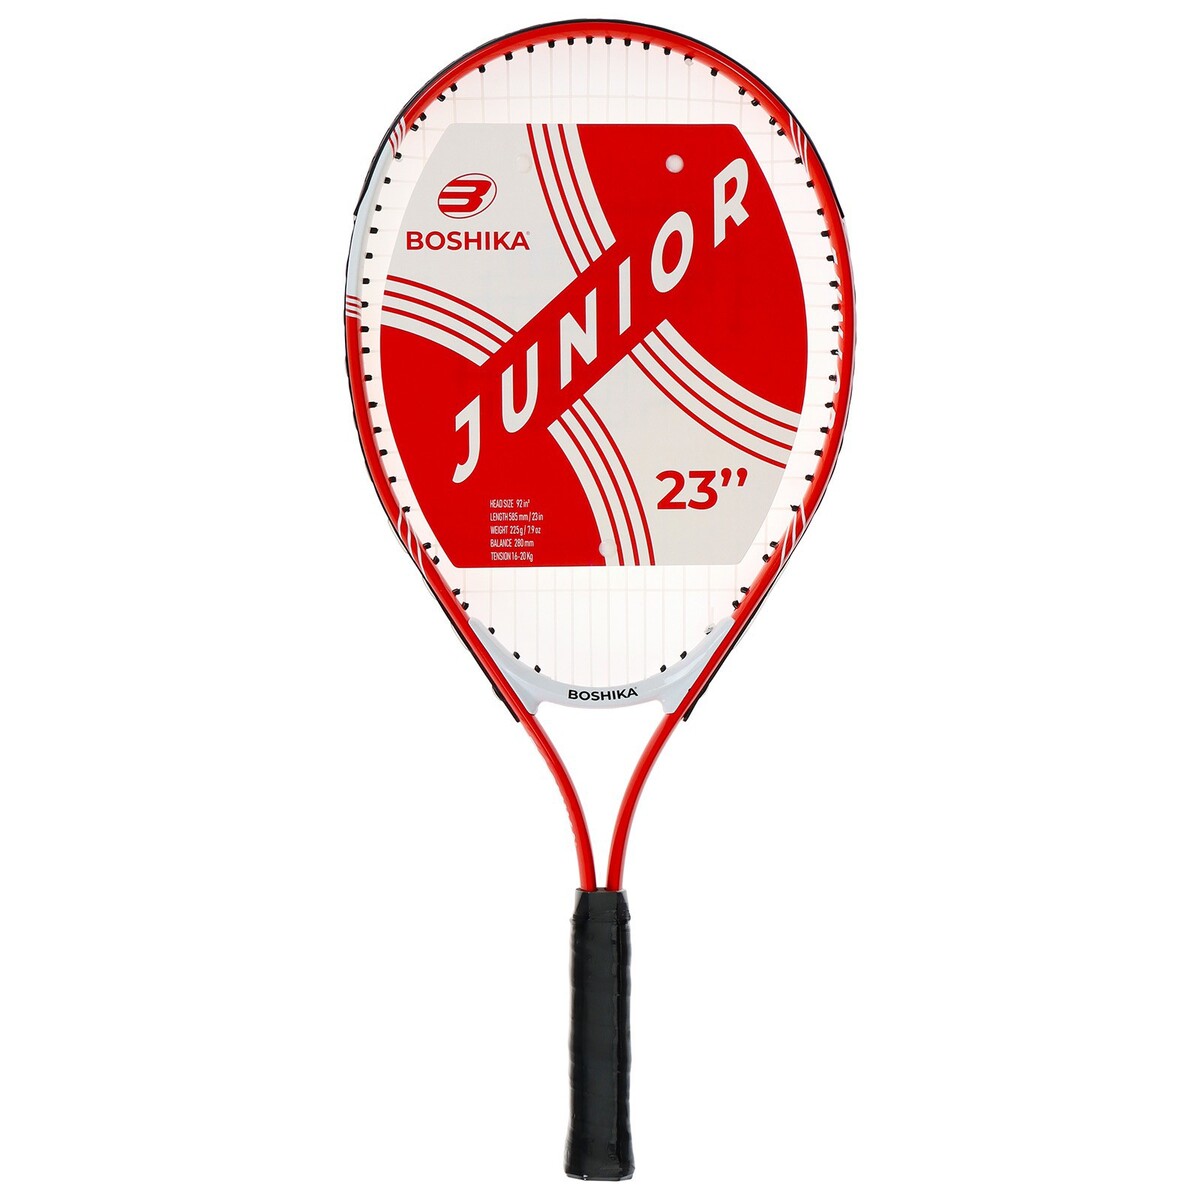 Ракетка для большого тенниса детская boshika junior, алюминий, 23'', цвет красный BOSHIKA